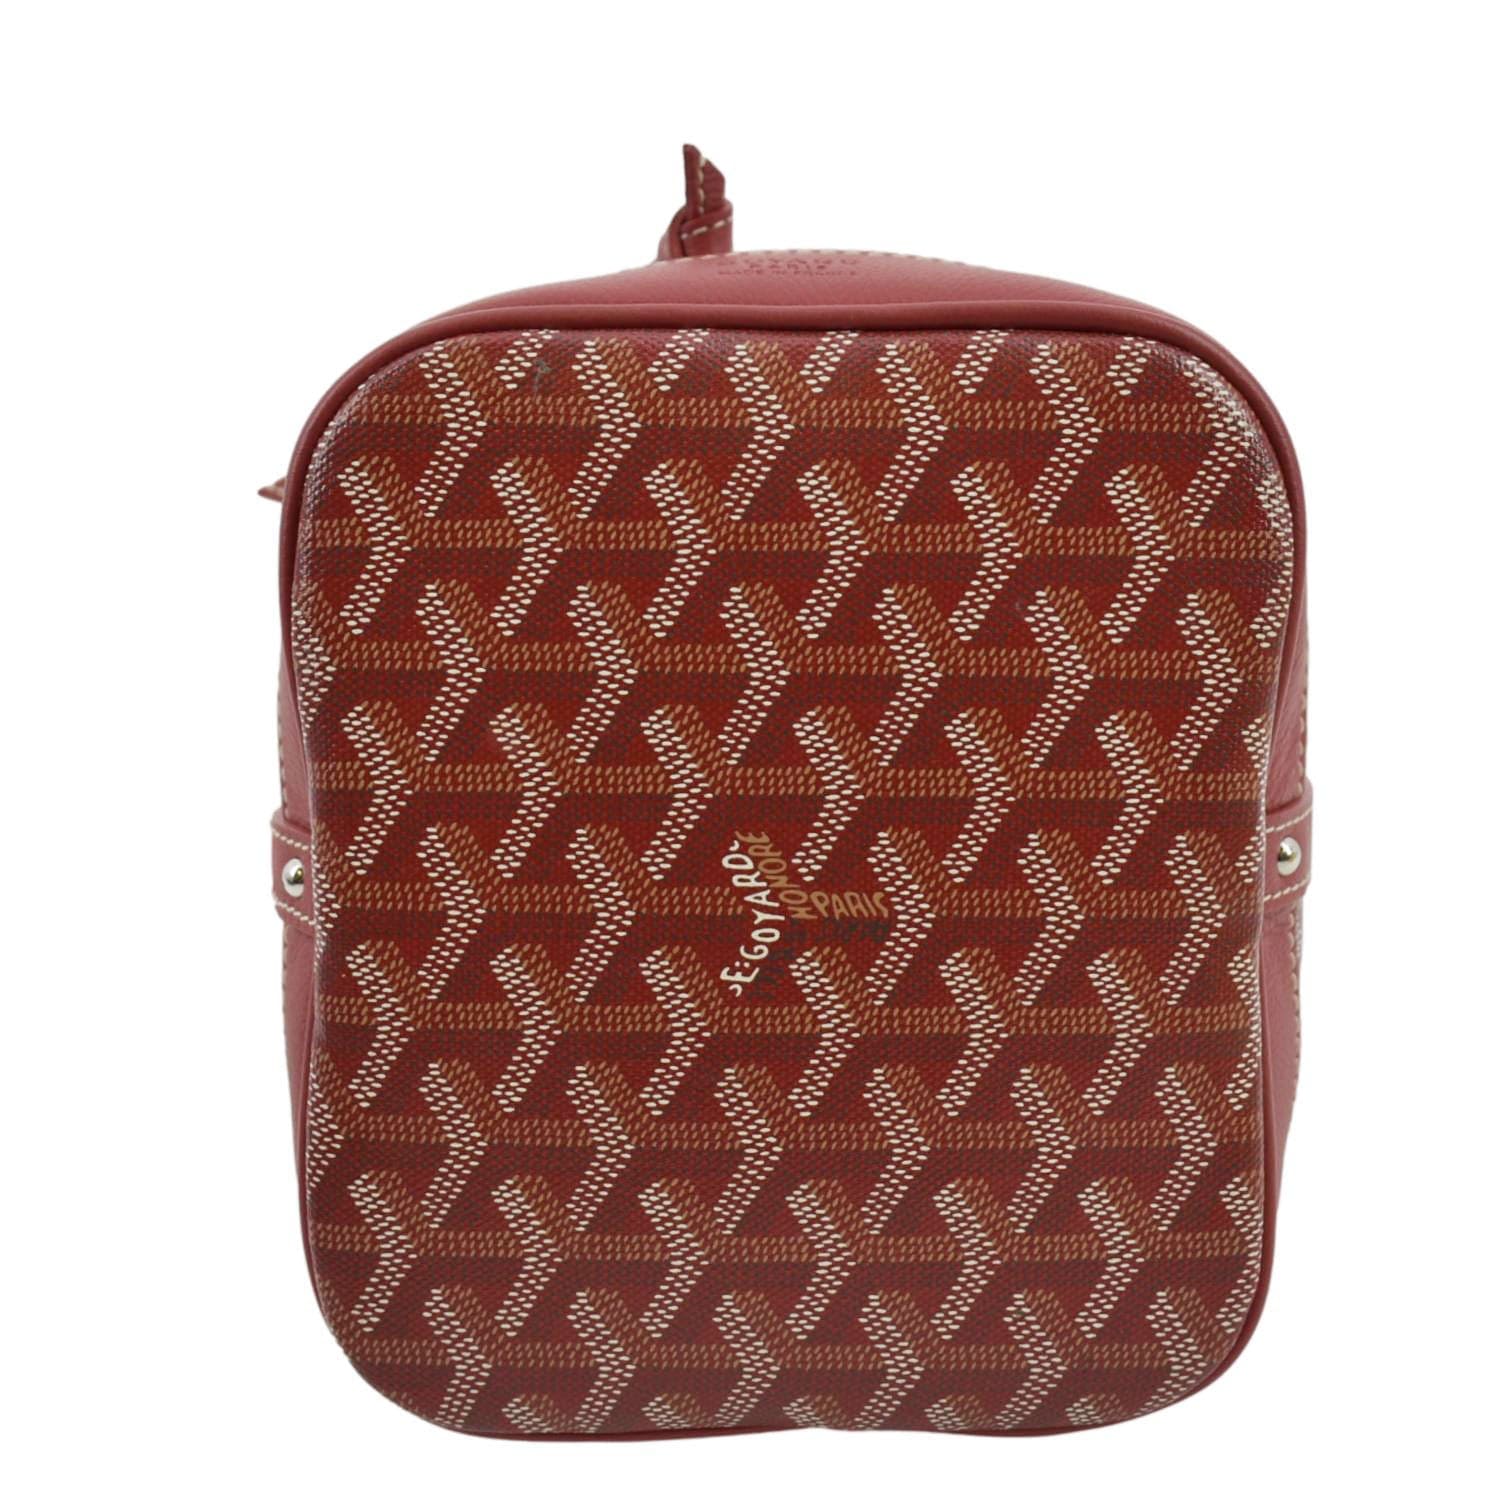 RED PETIT FLOT BUCKET BAG PM  .com/en/products/petit-flot-bucket-bag/